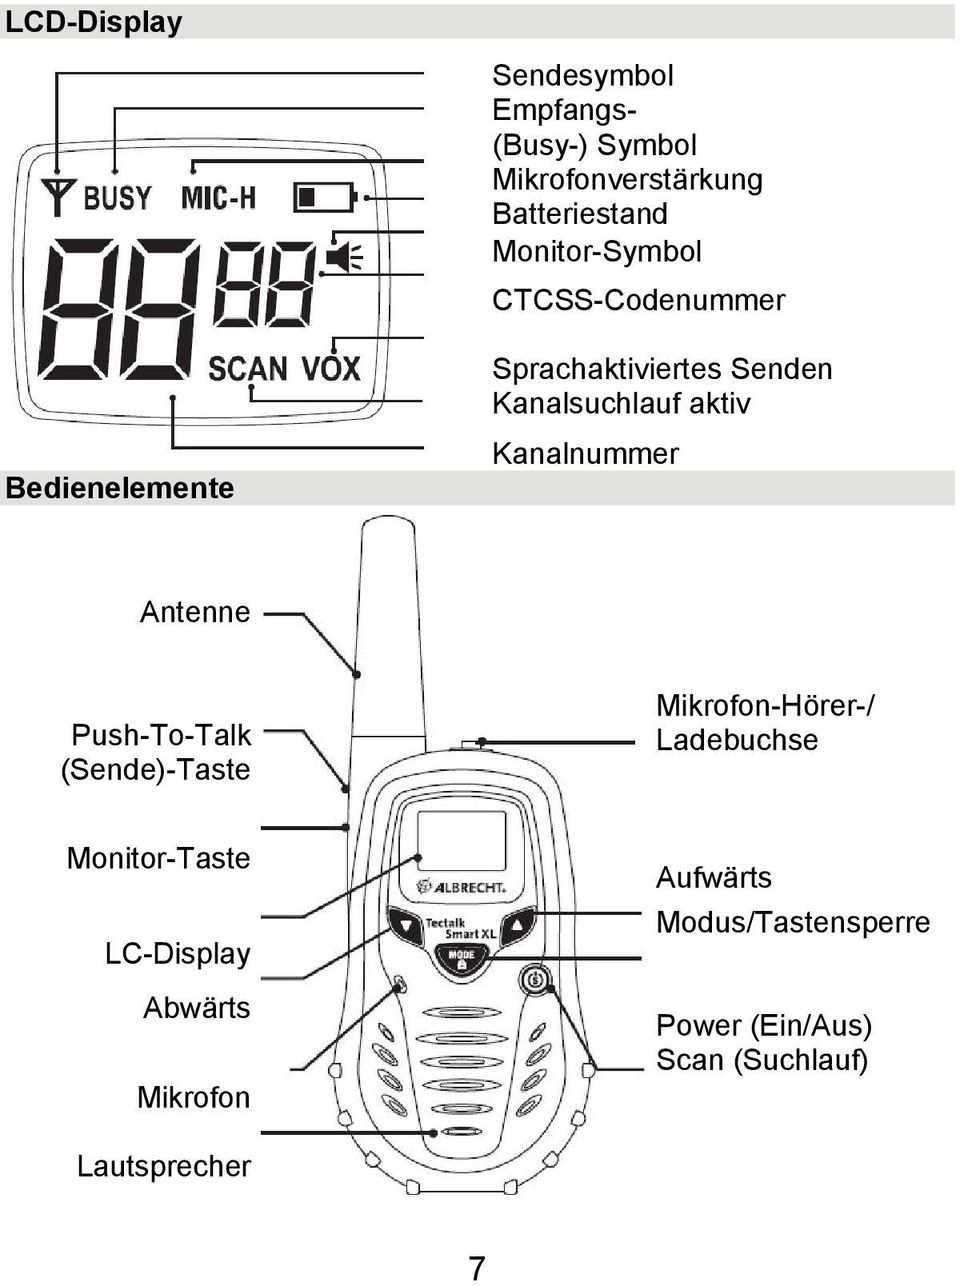 Kanalnummer Antenne Push-To-Talk (Sende)-Taste Mikrofon-Hörer-/ Ladebuchse Monitor-Taste